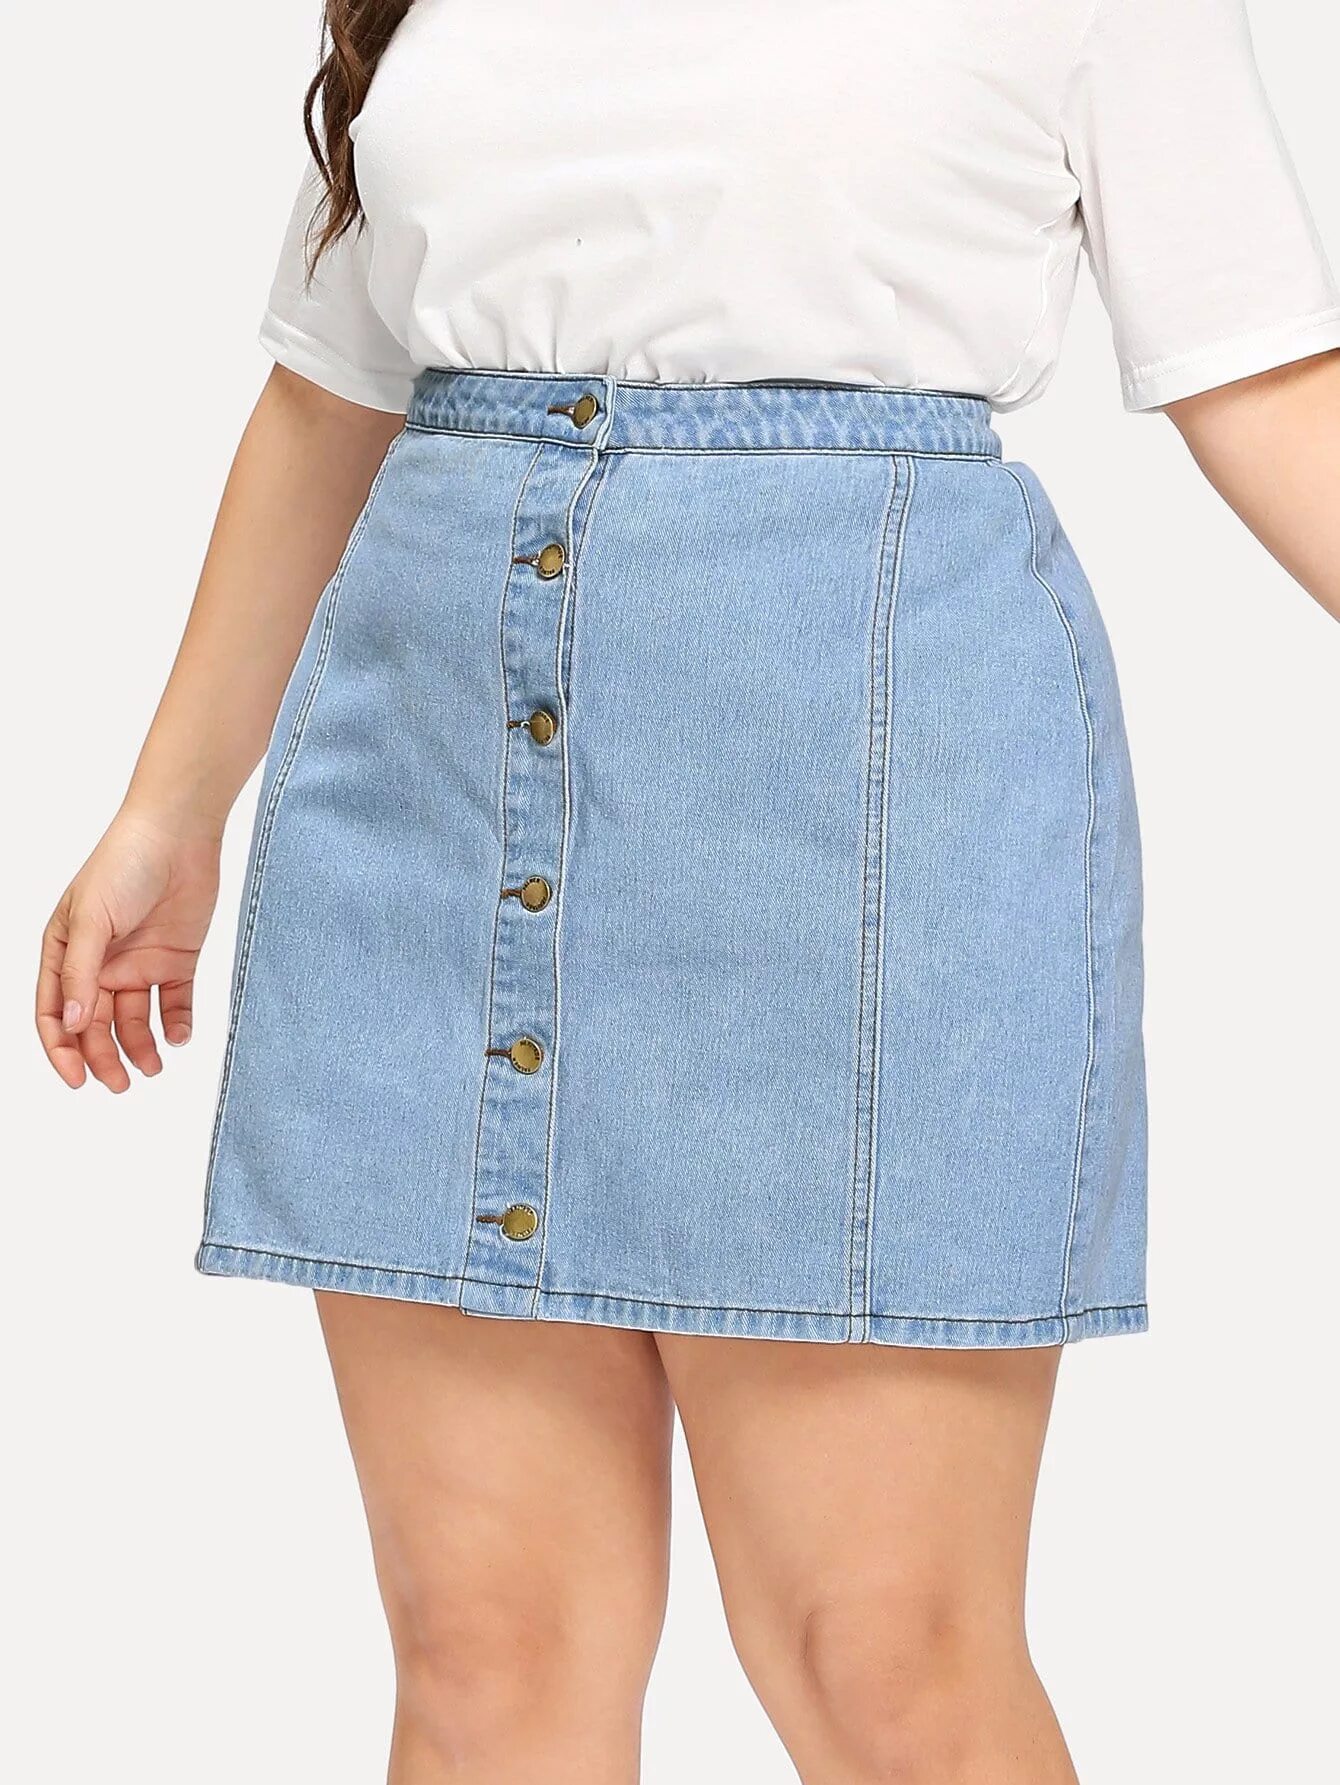 Купить джинсовую юбку на валберис. Валберис джинсовые юбки женские. Юбка джинсовая 2021 плюс сайз. Джинсовая юбка миди плюс сайз. Джинсовые юбки для полных.